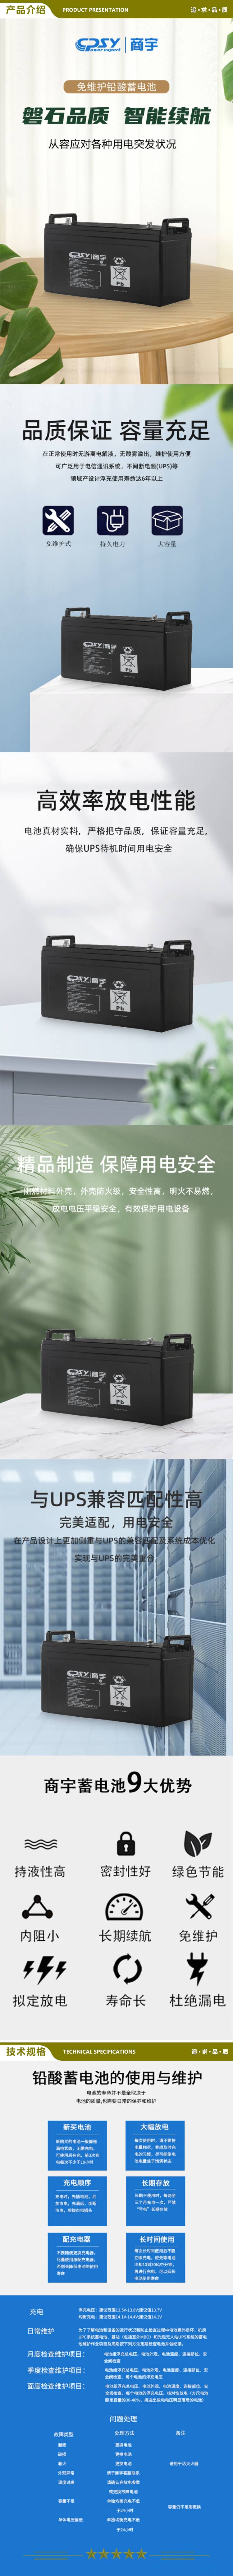 商宇 UPS不间断电源 阀控式密封铅酸蓄电池 适用于UPS电源 GW12V100AHx4块 2.jpg